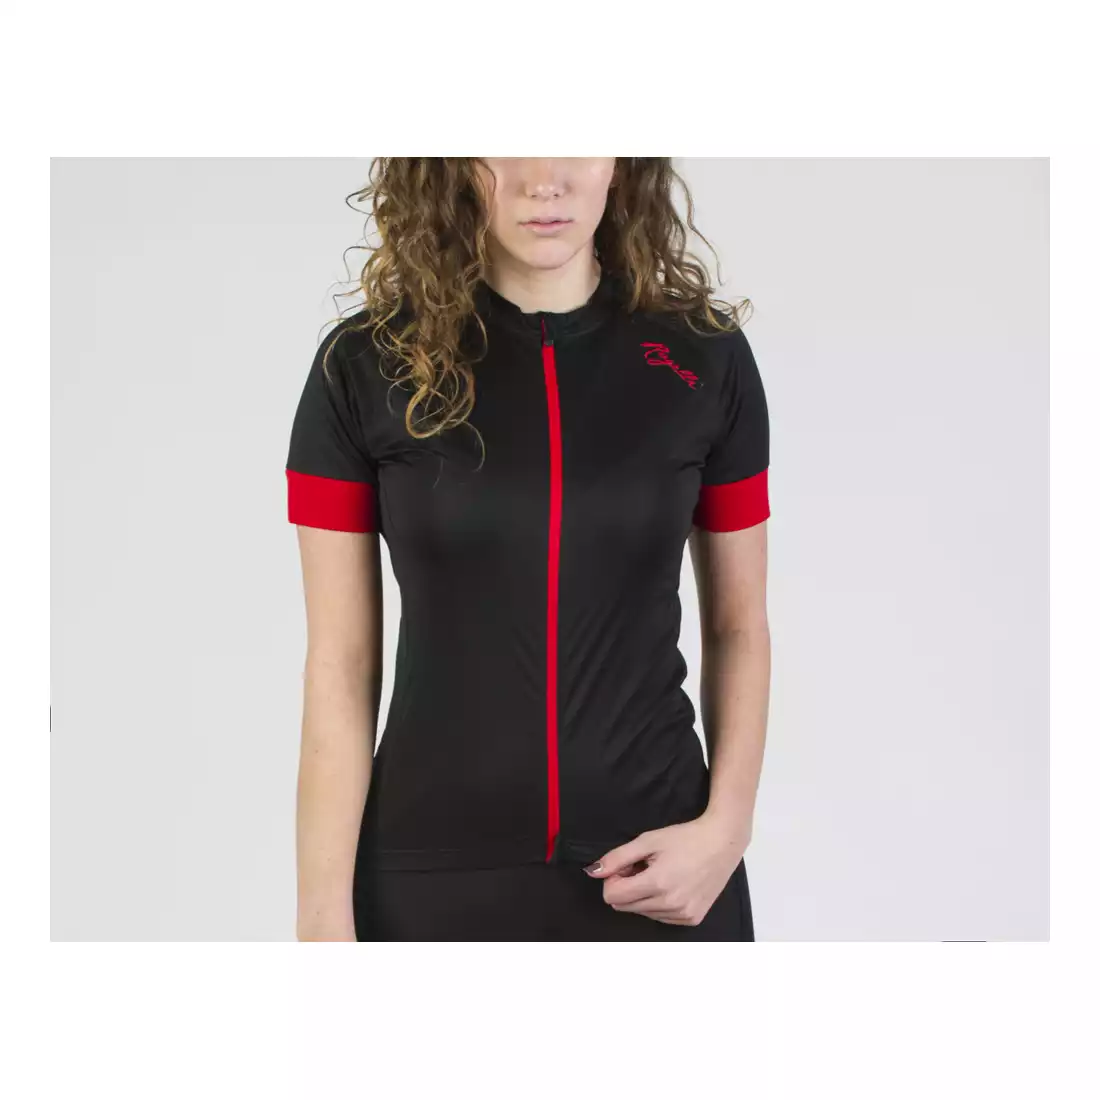 ROGELLI MODESTA damska koszulka rowerowa, czarno-czerwona